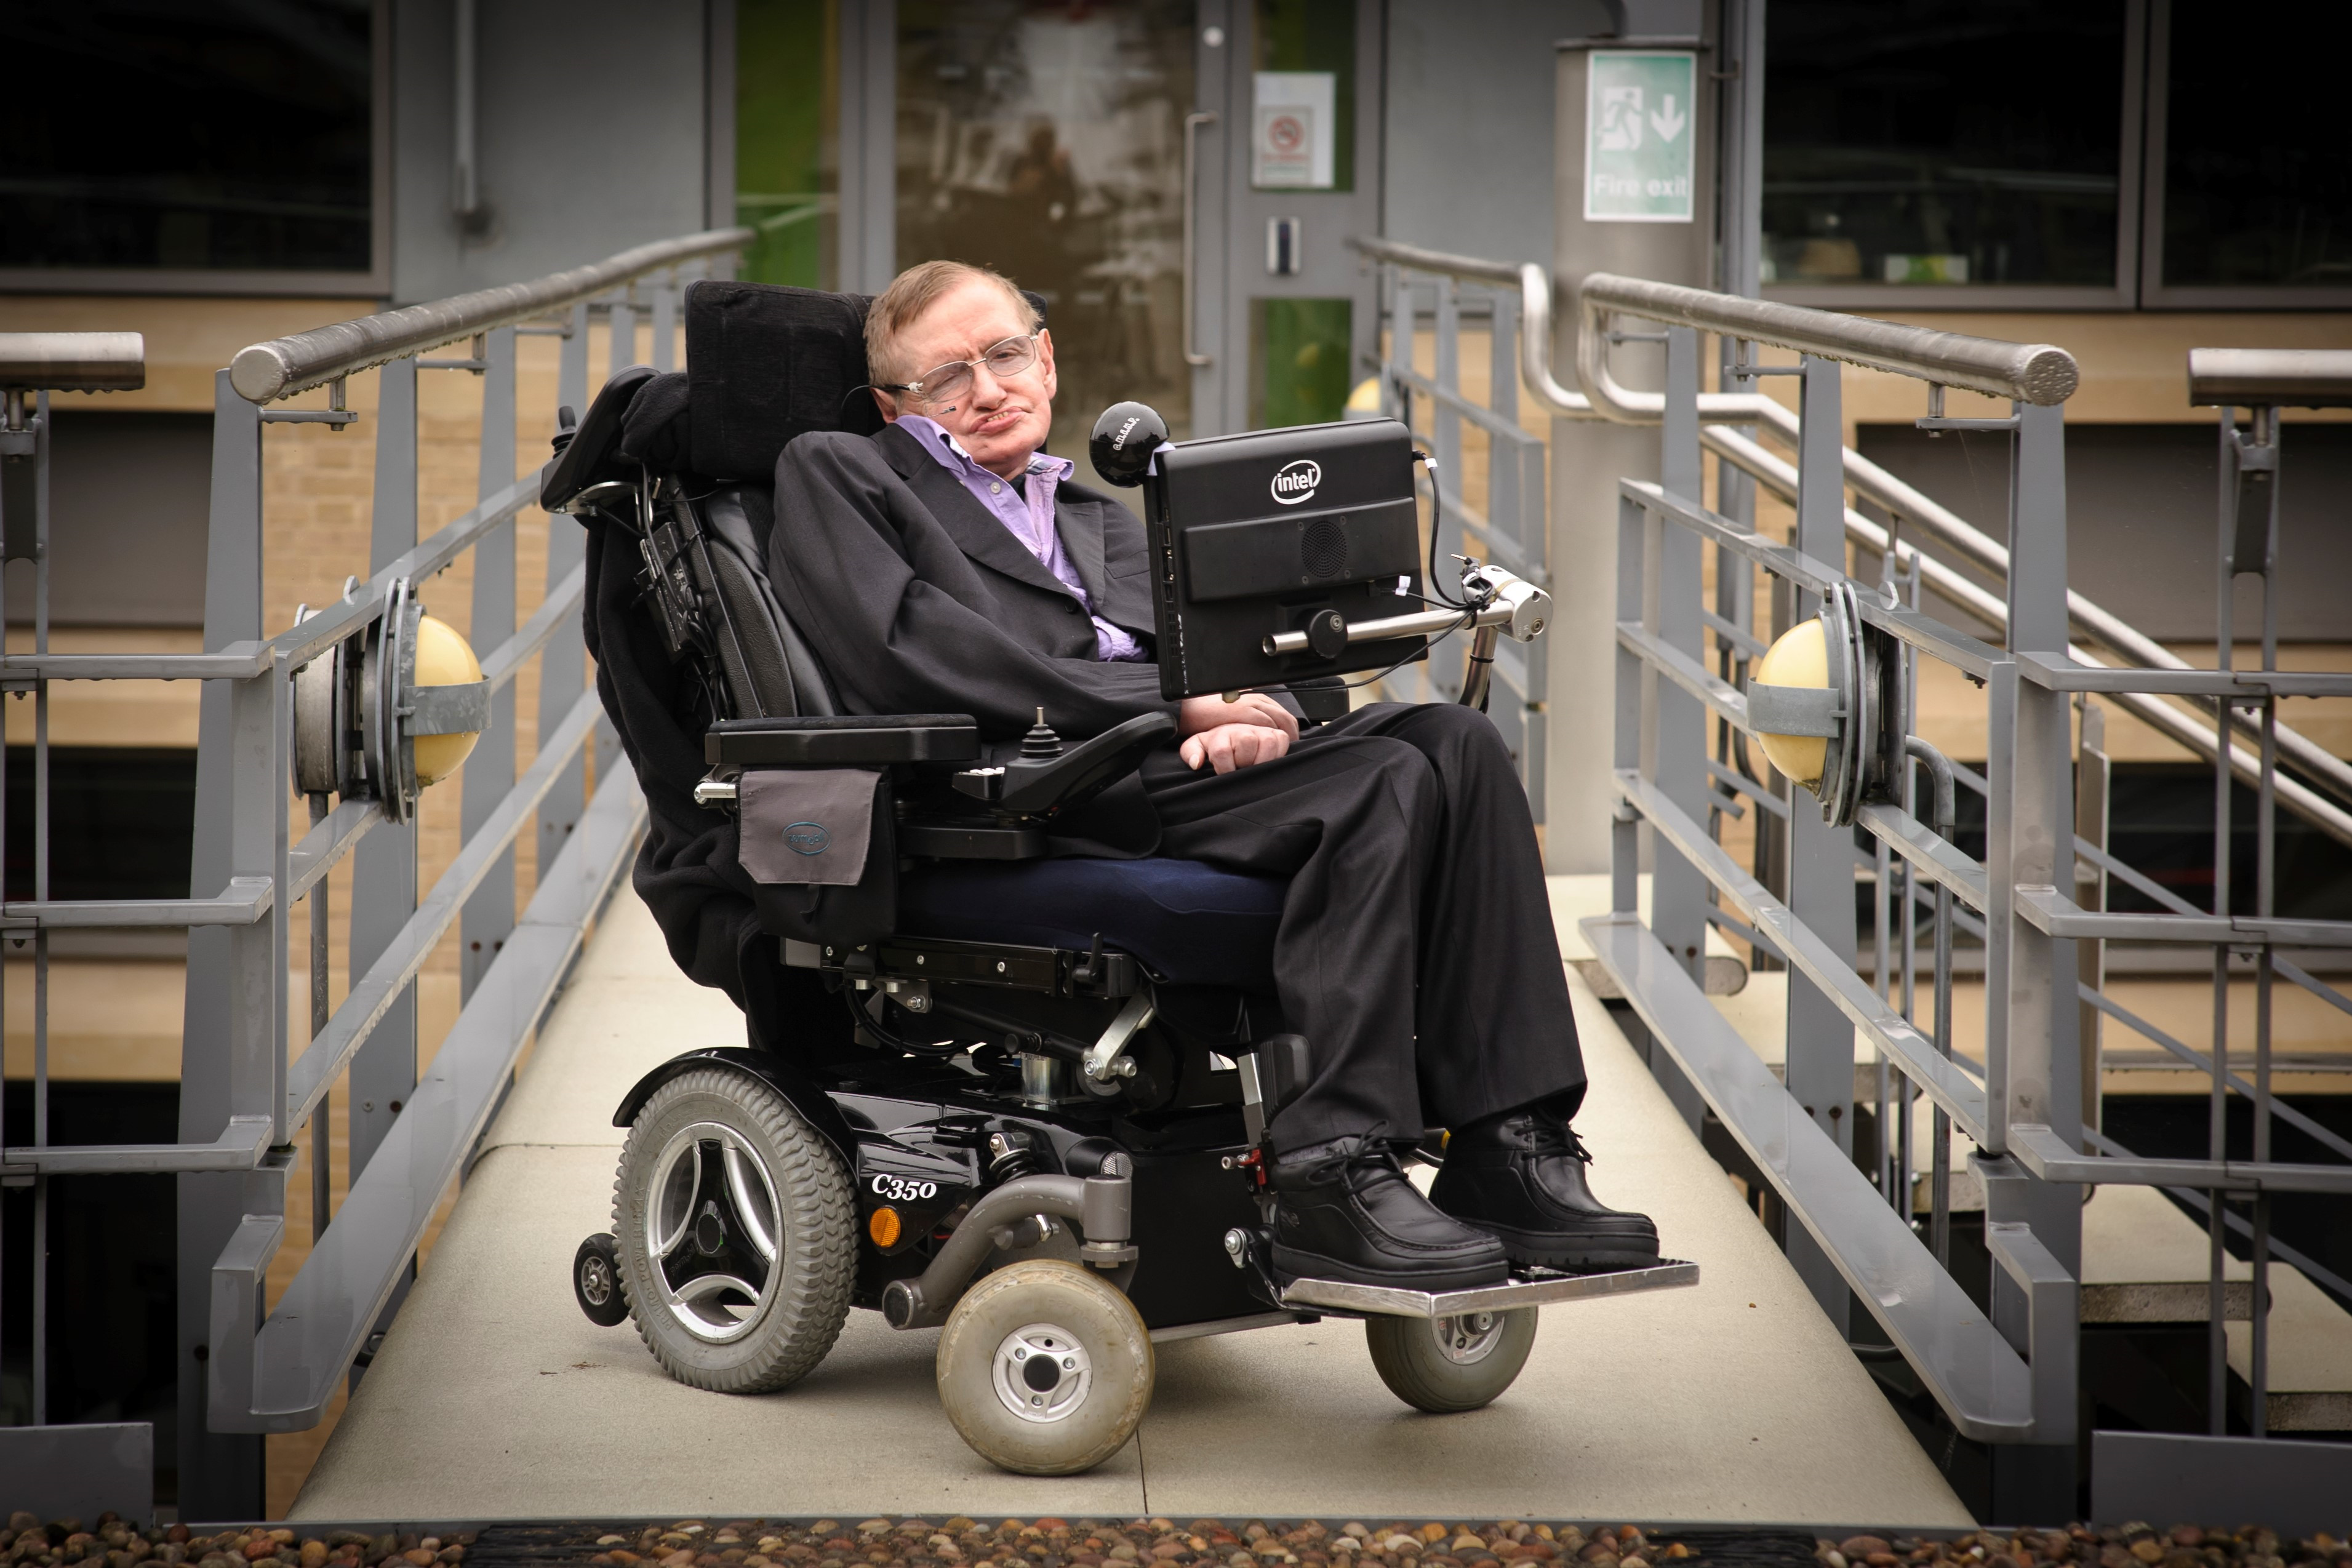 Cỗ máy của "ông già thông minh nhất thế giới" Stephen Hawking